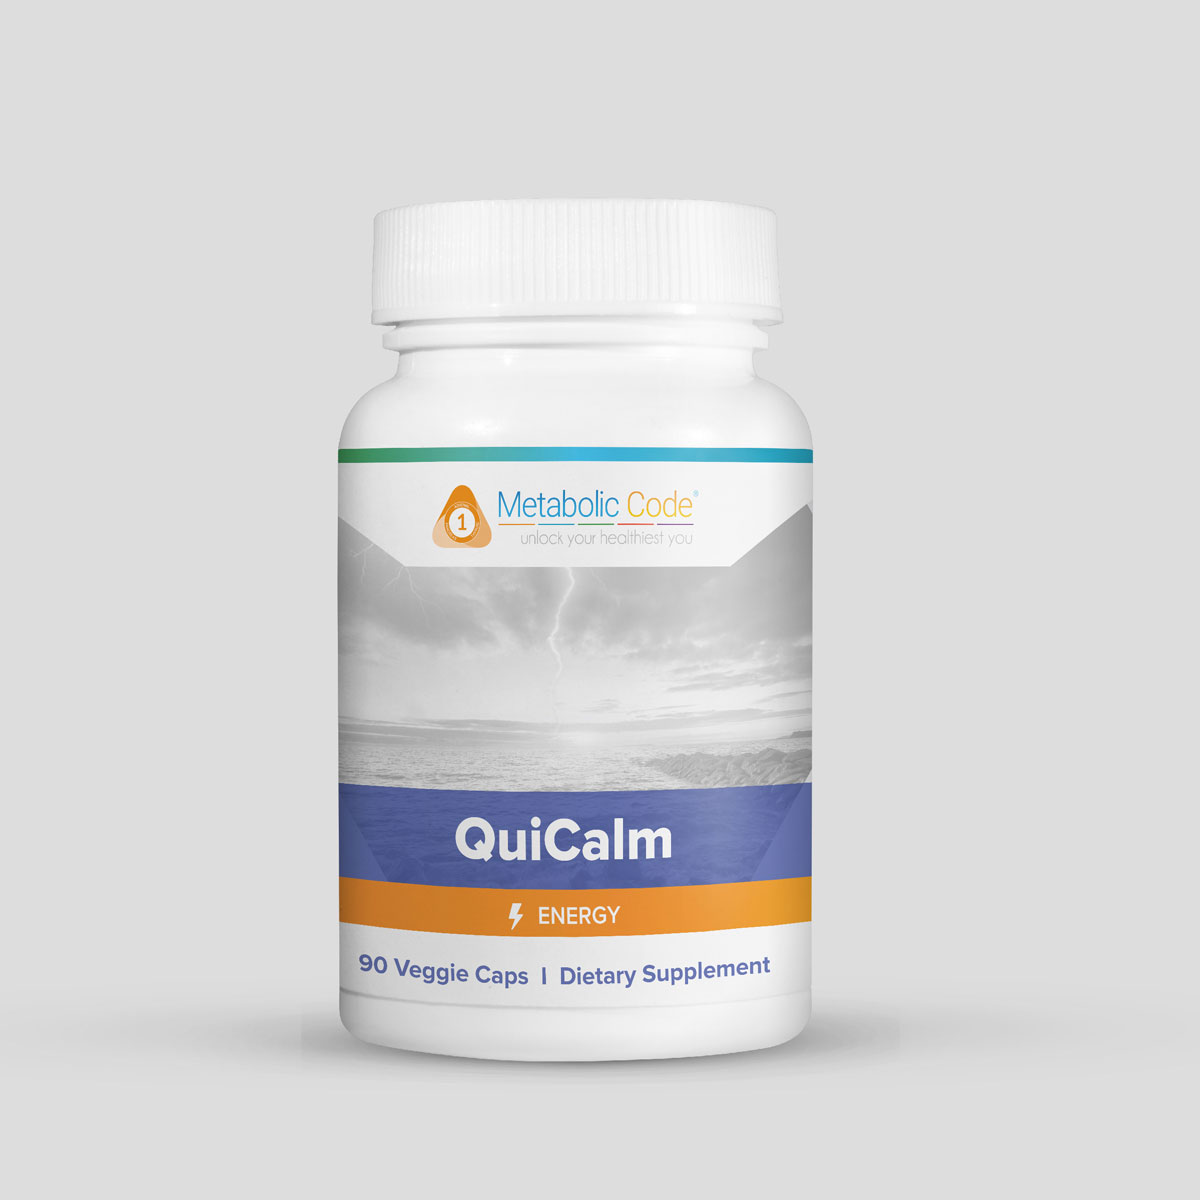 QuiCalm (Metabolic Code)